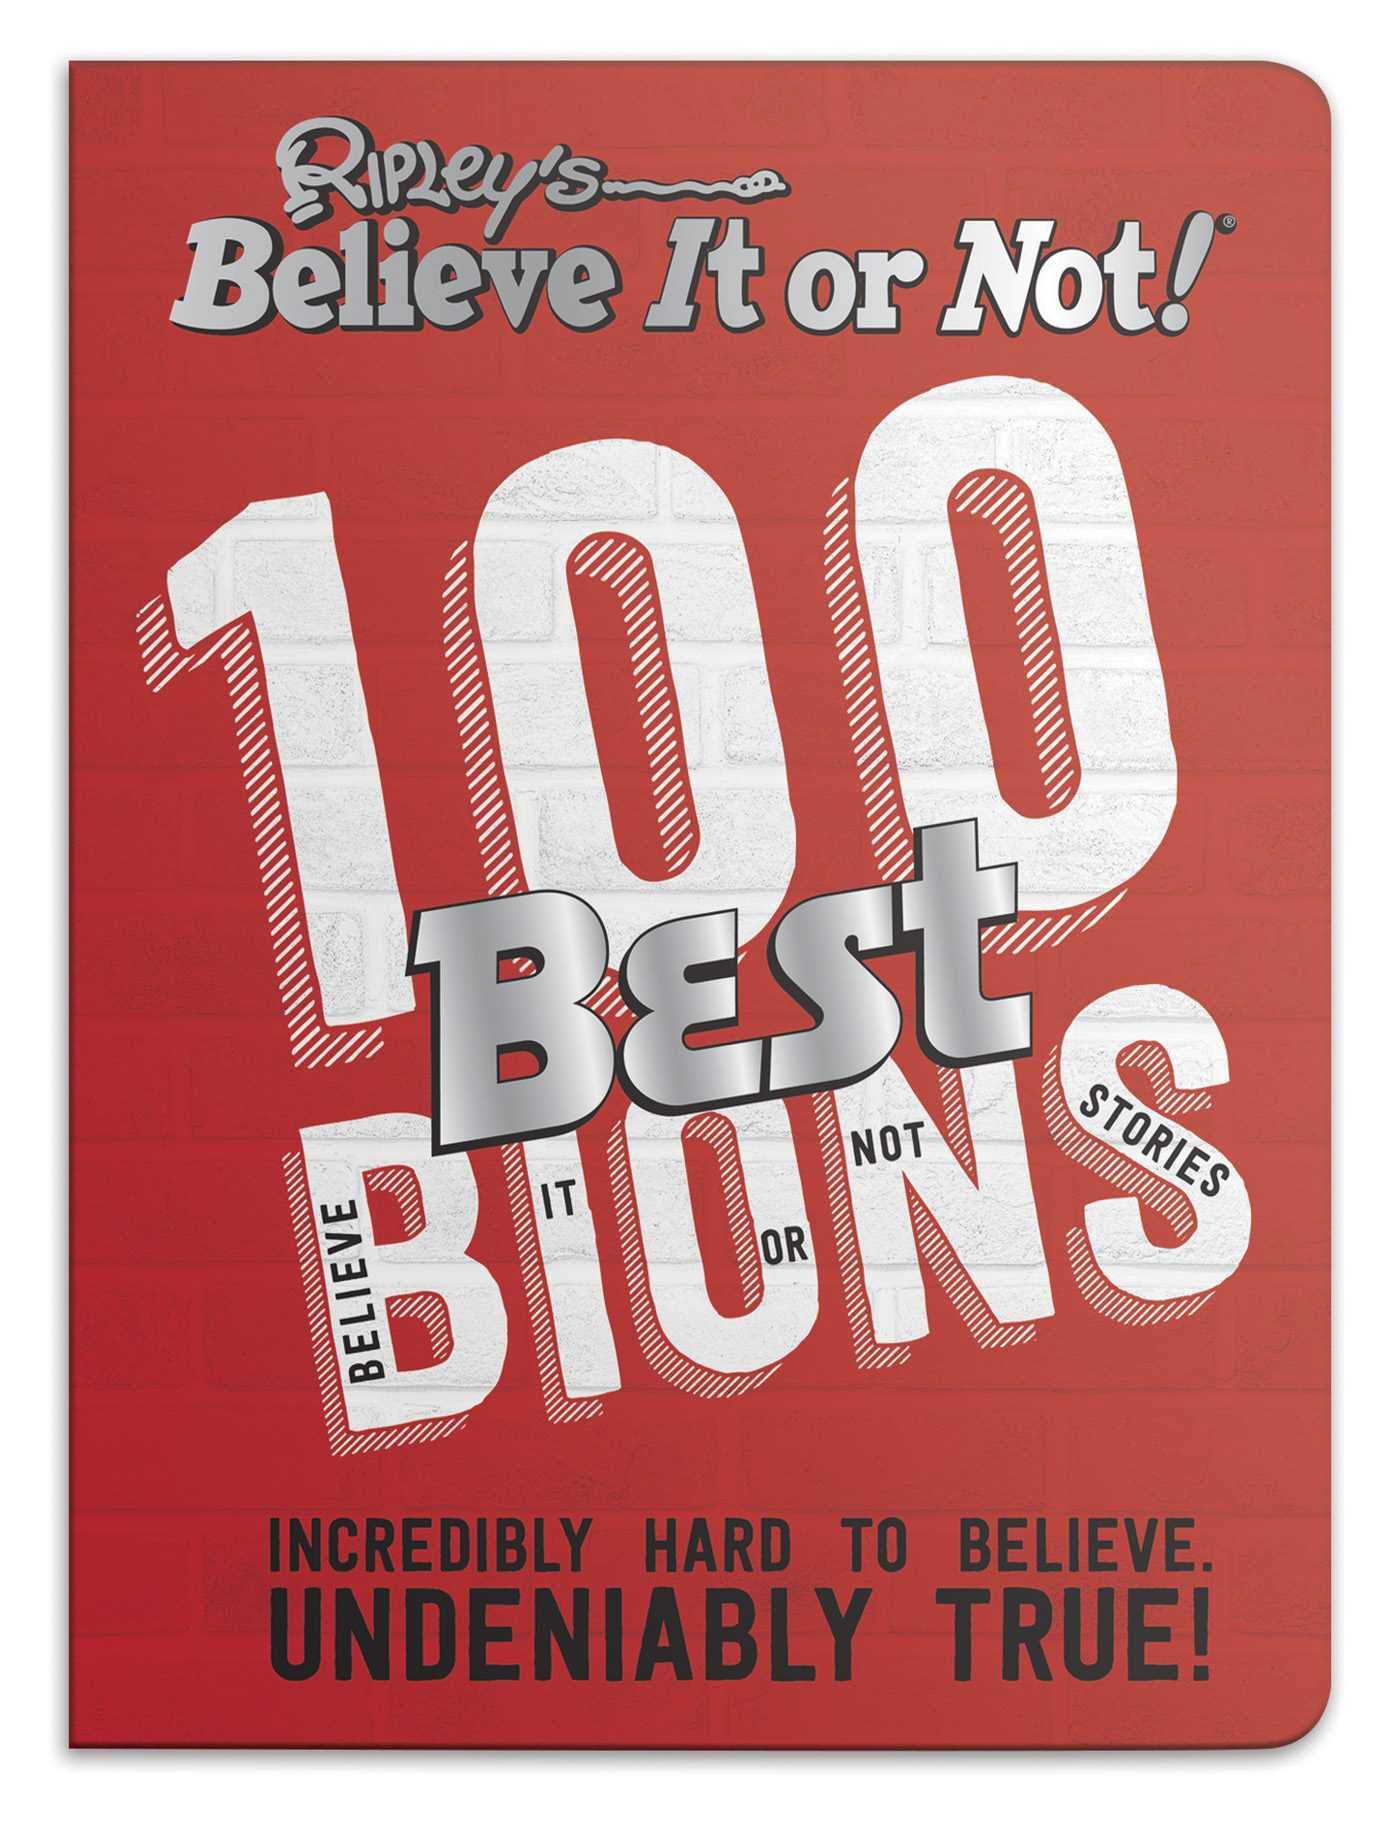 Book “Ripley’s 100 Best Believe It or Nots” by Ripley — June 13, 2019